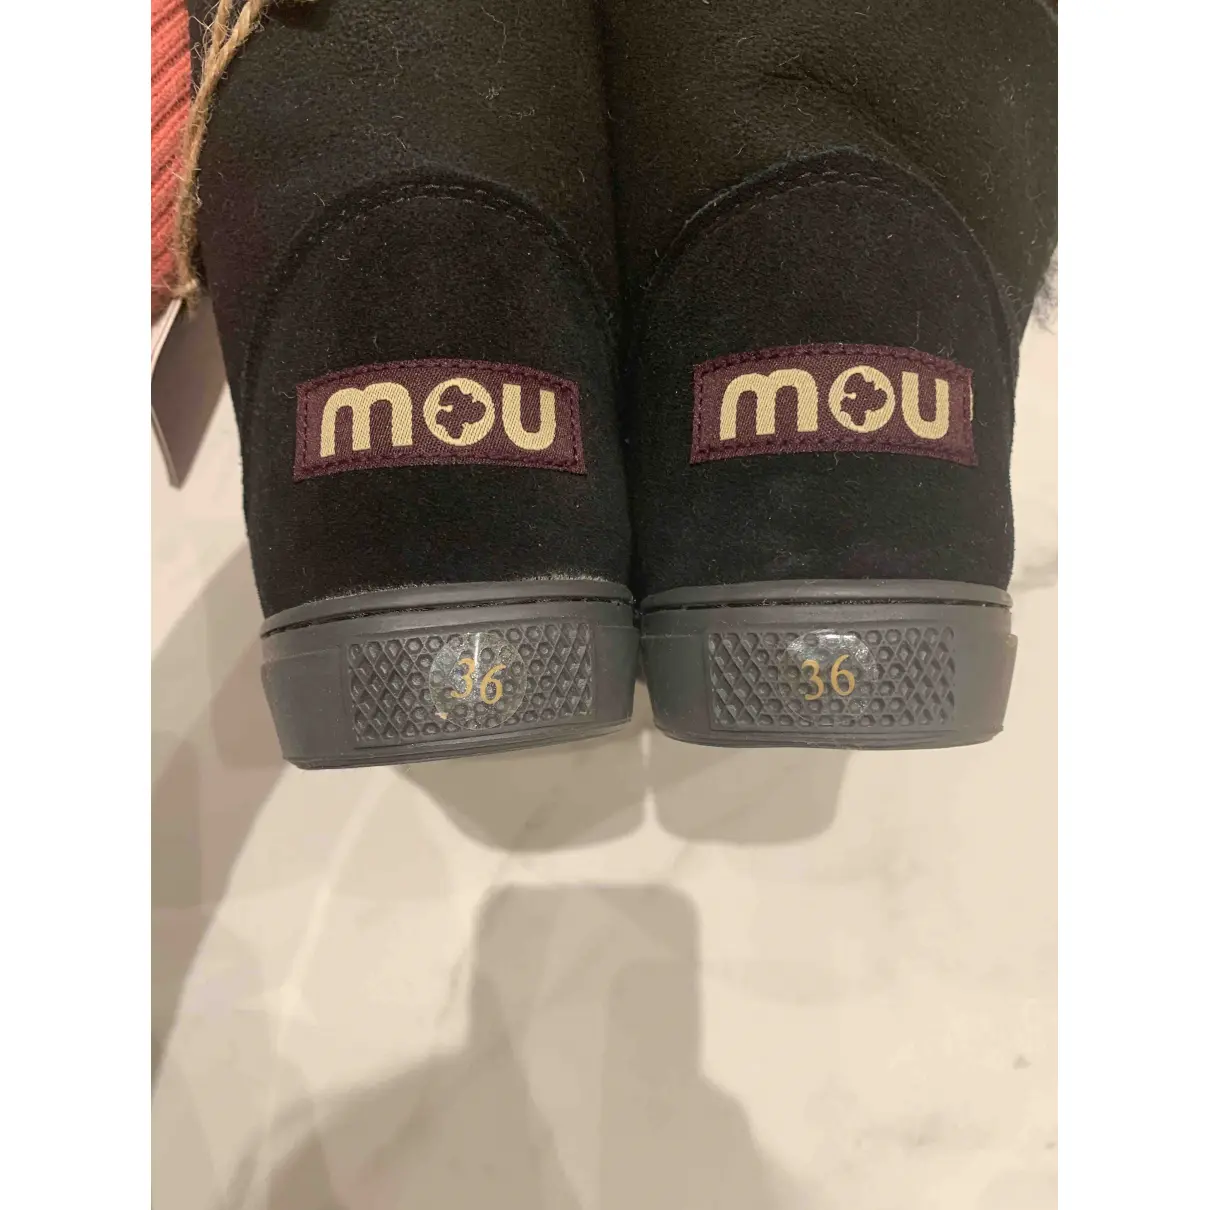 Luxury Mou Boots Women